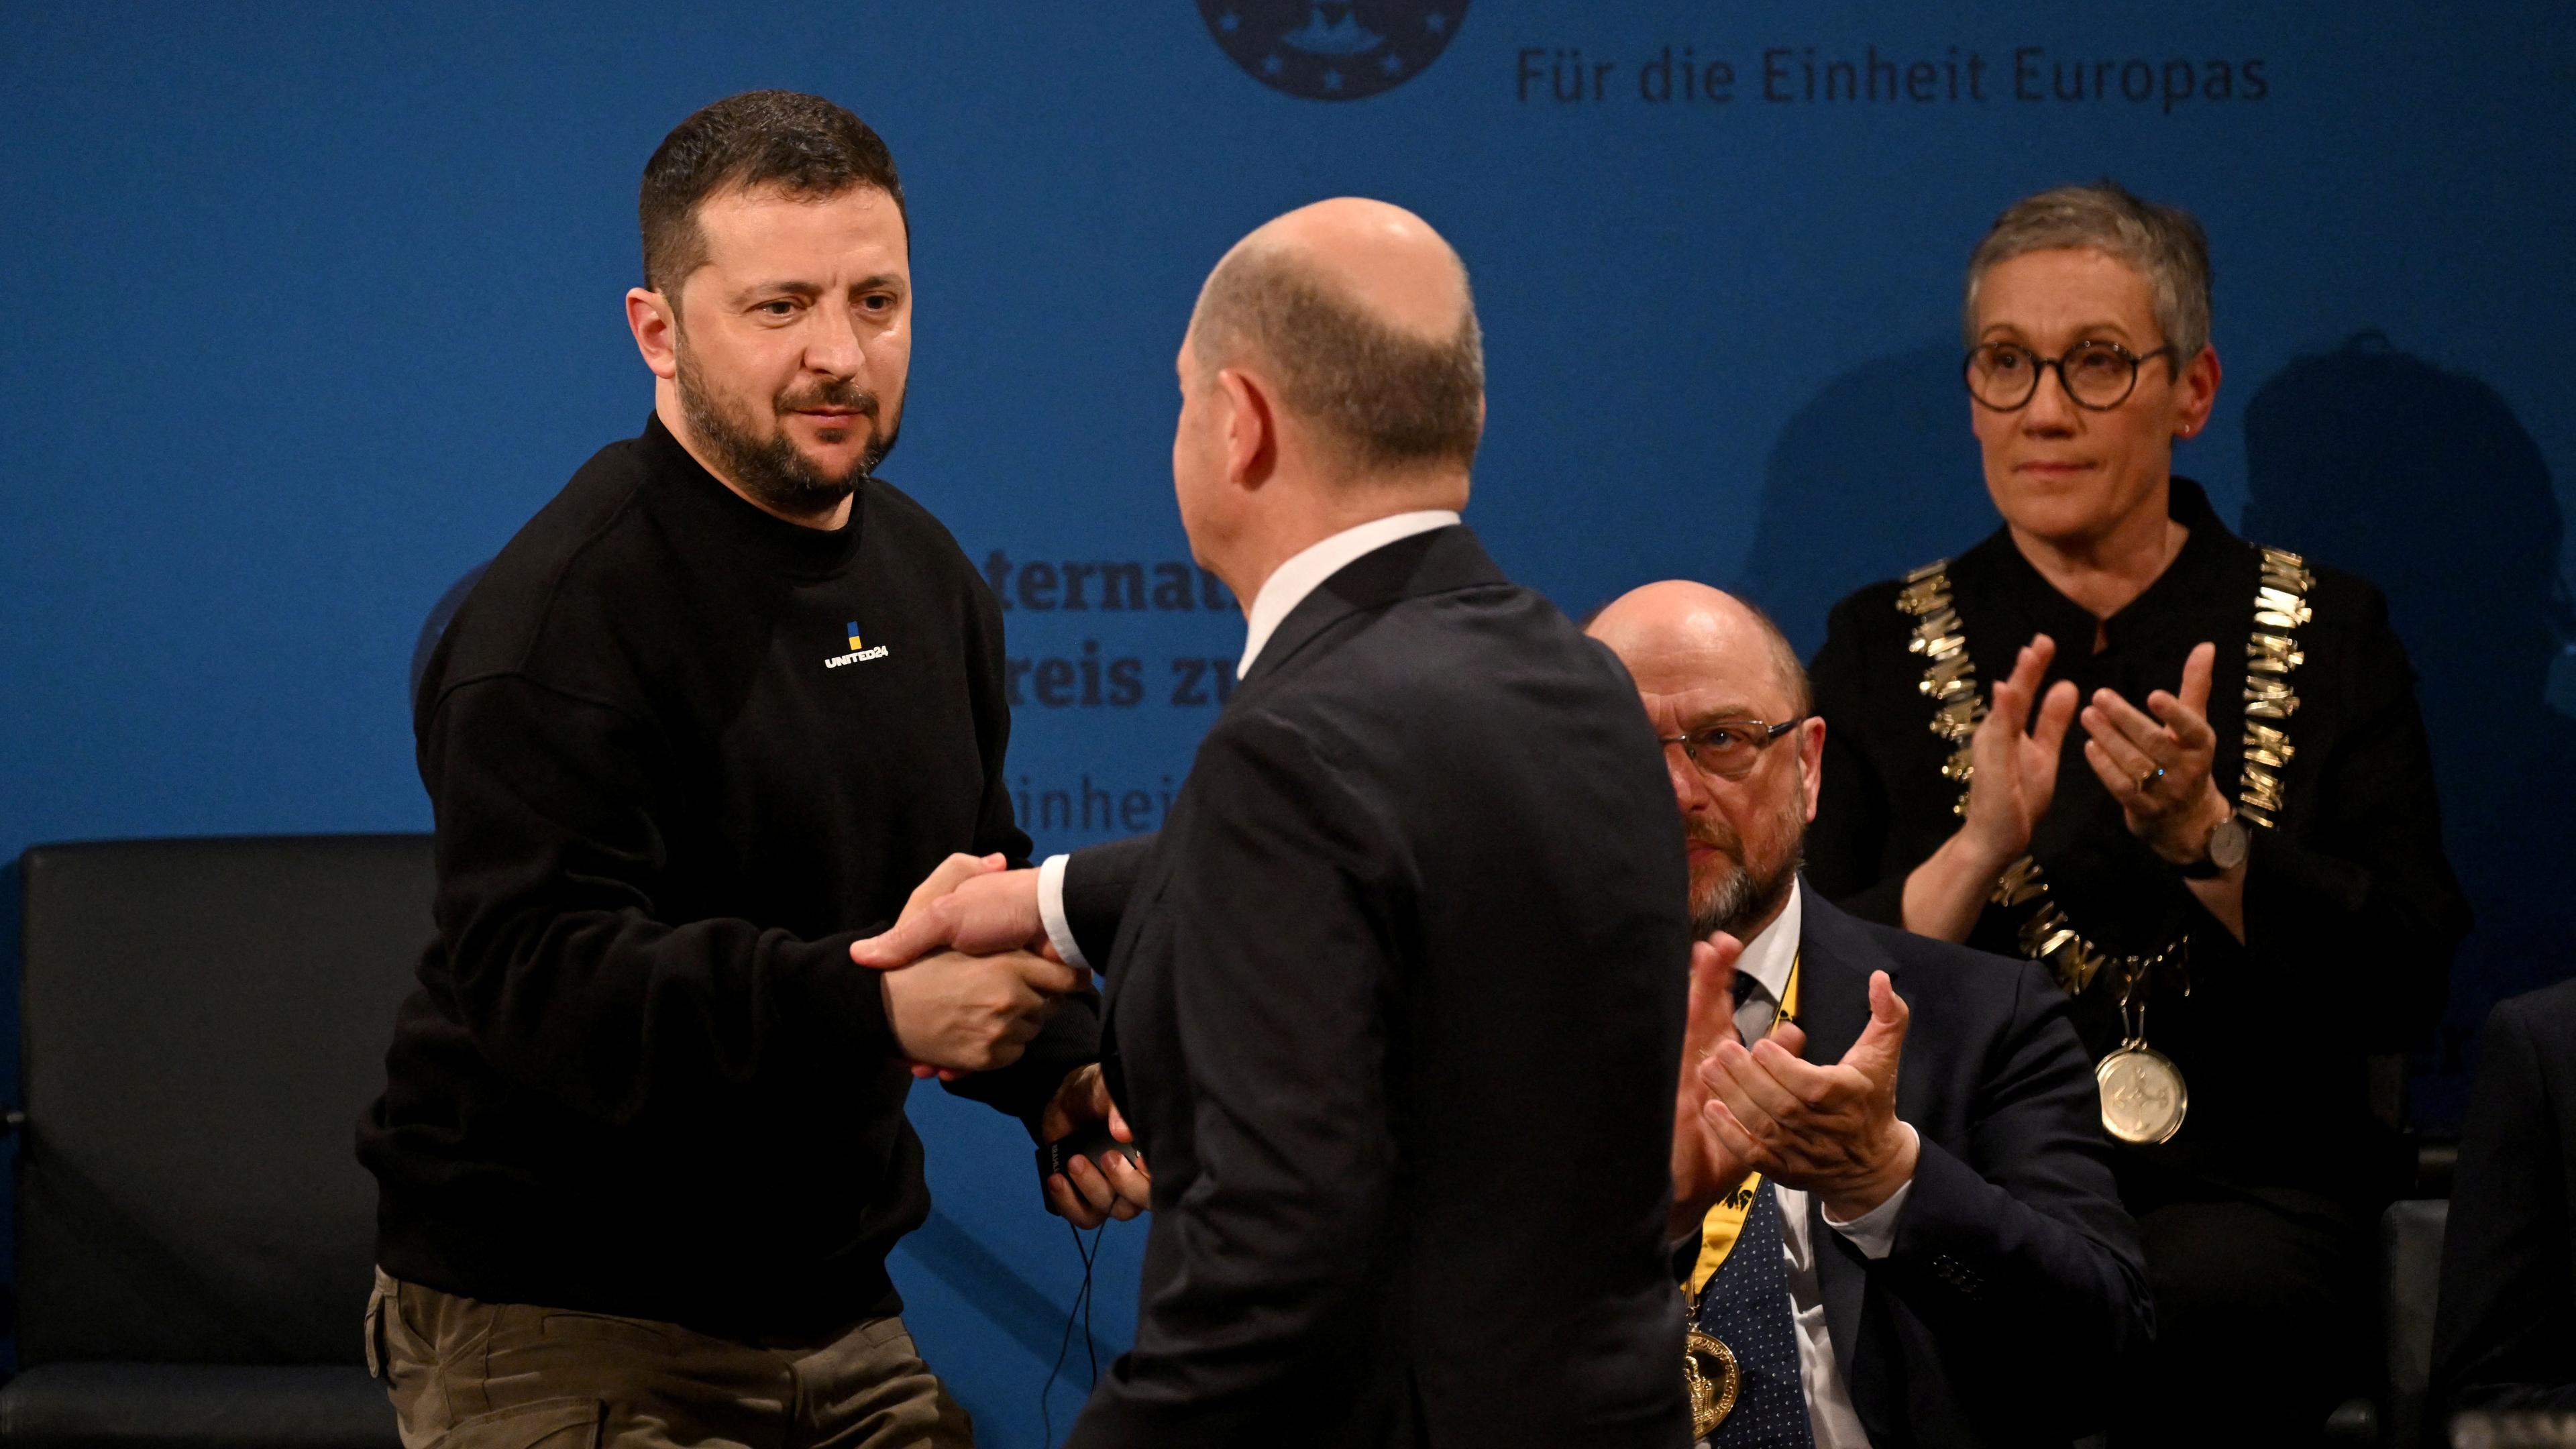 Ukrainischer Präsident in Deutschland - Karlspreis - Scholz gratuliert Selenskyj